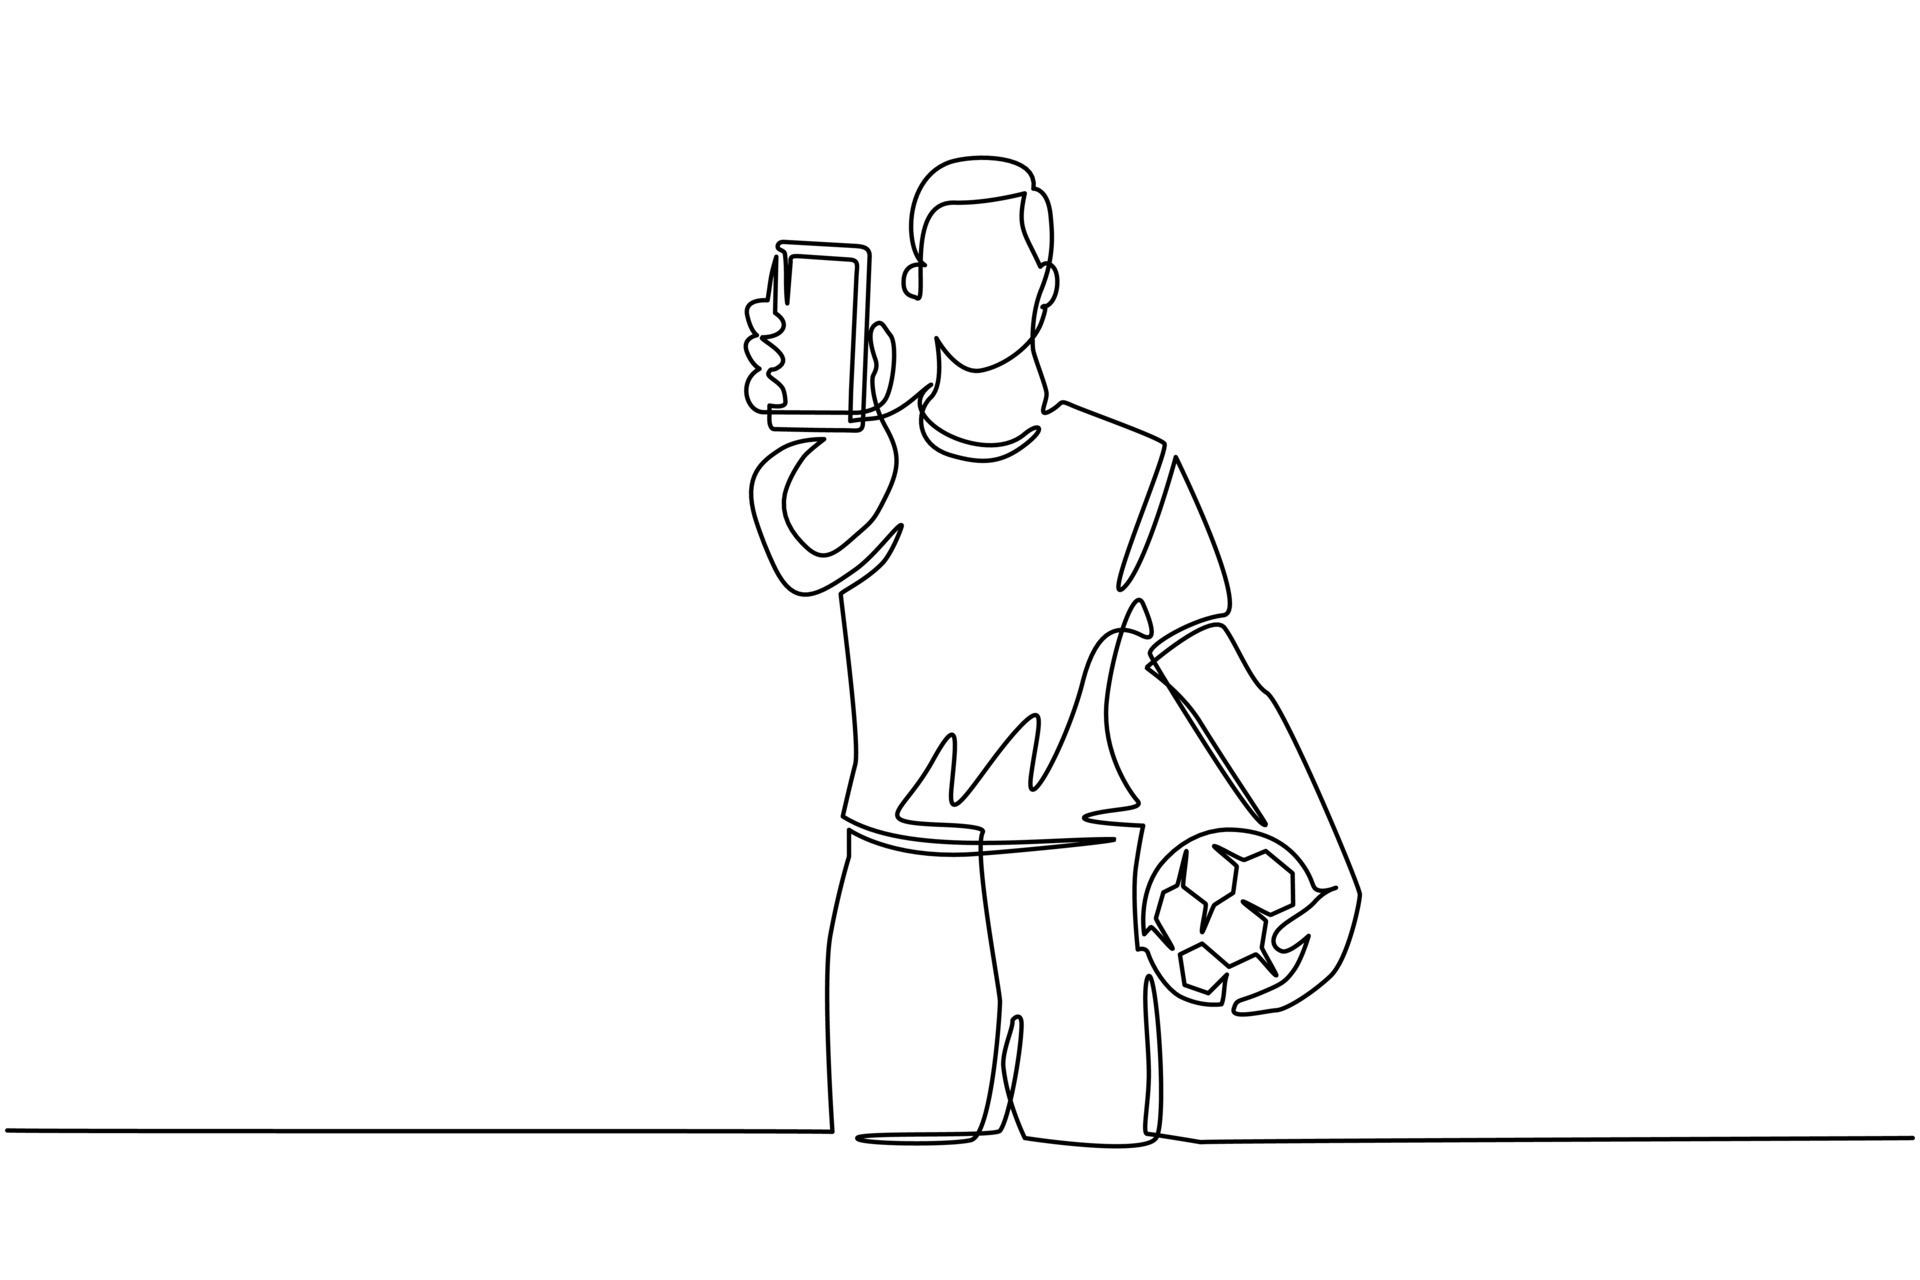 único smartphone de desenho de linha contínua com campo de futebol